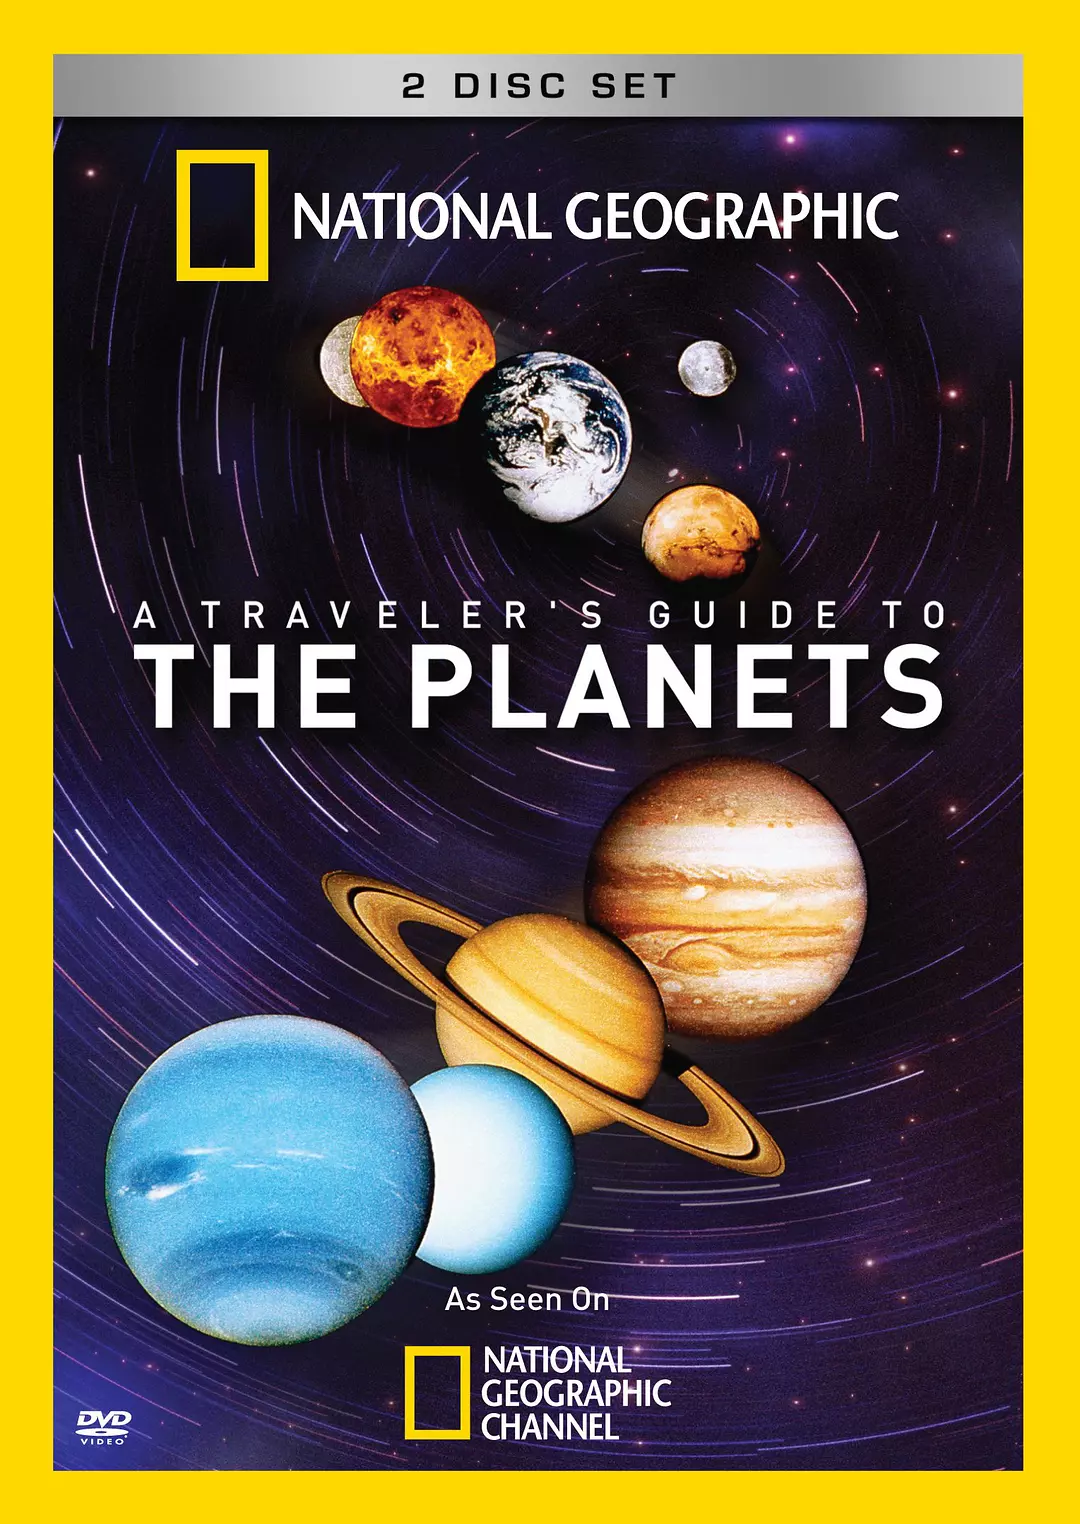 行星旅行指南 A Traveler's Guide To The Planets